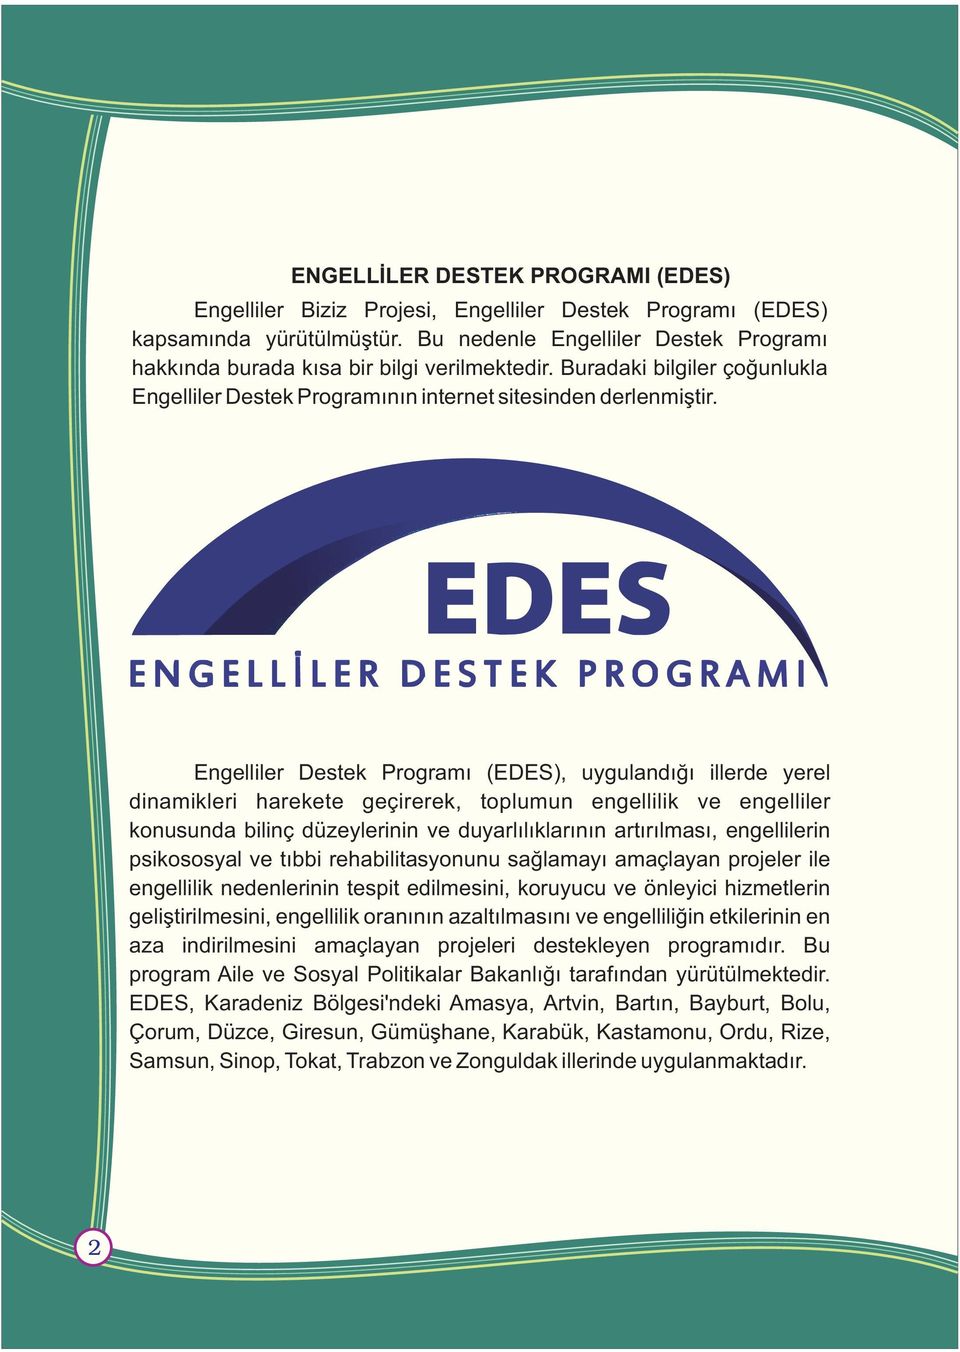 Engelliler Destek Programý (EDES), uygulandýðý illerde yerel dinamikleri harekete geçirerek, toplumun engellilik ve engelliler konusunda bilinç düzeylerinin ve duyarlýlýklarýnýn artýrýlmasý,